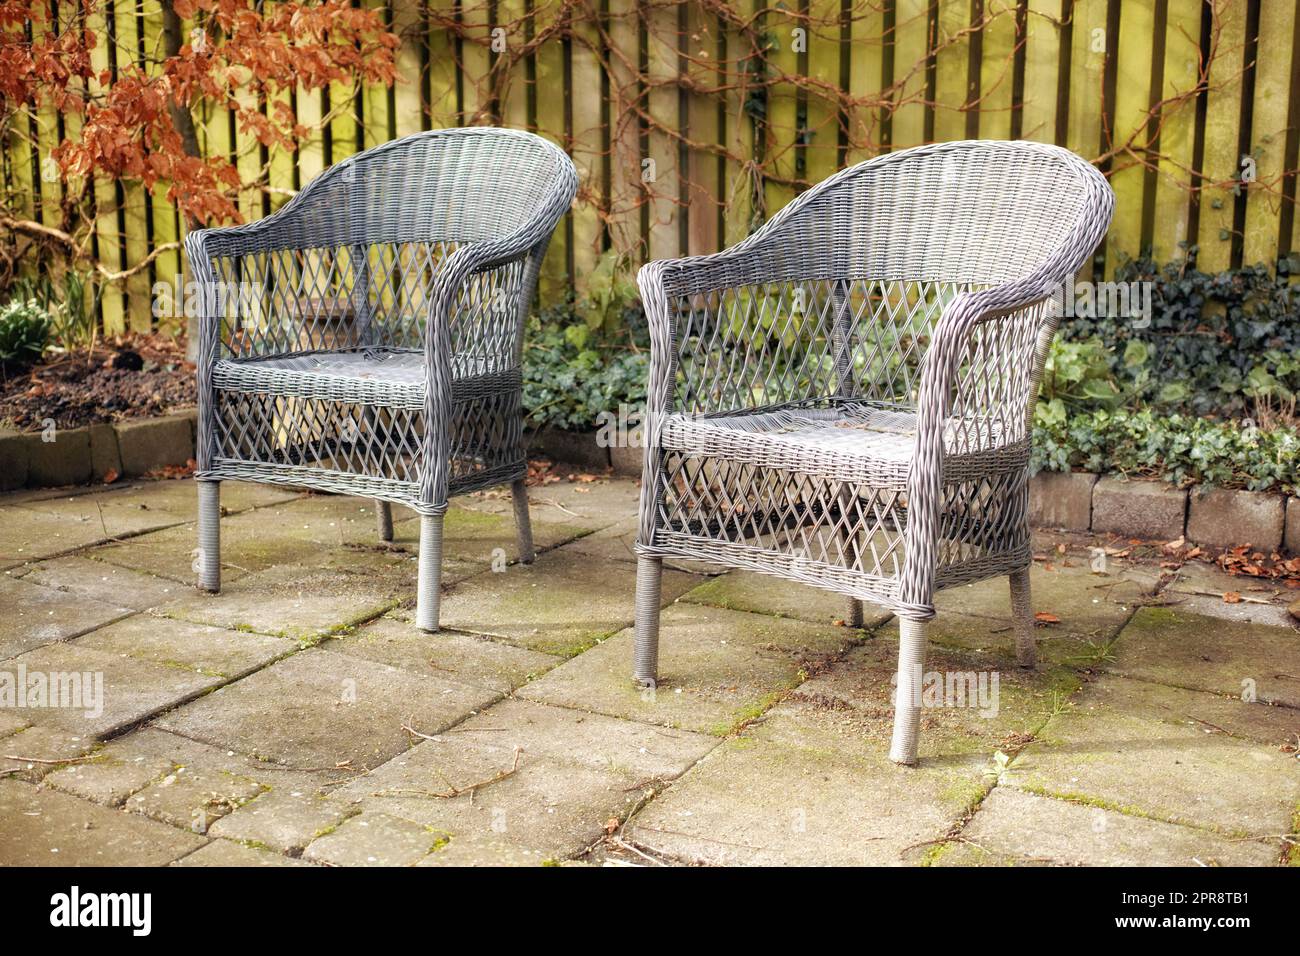 Sessel in einem entspannenden Gartenbereich im Hinterhof eines Hauses. Dekorative Gartenmöbel oder gewebte Stühle in der Nähe von Zierpflanzen. Gartendekor außerhalb des Hauses auf einer Terrasse im Hof Stockfoto